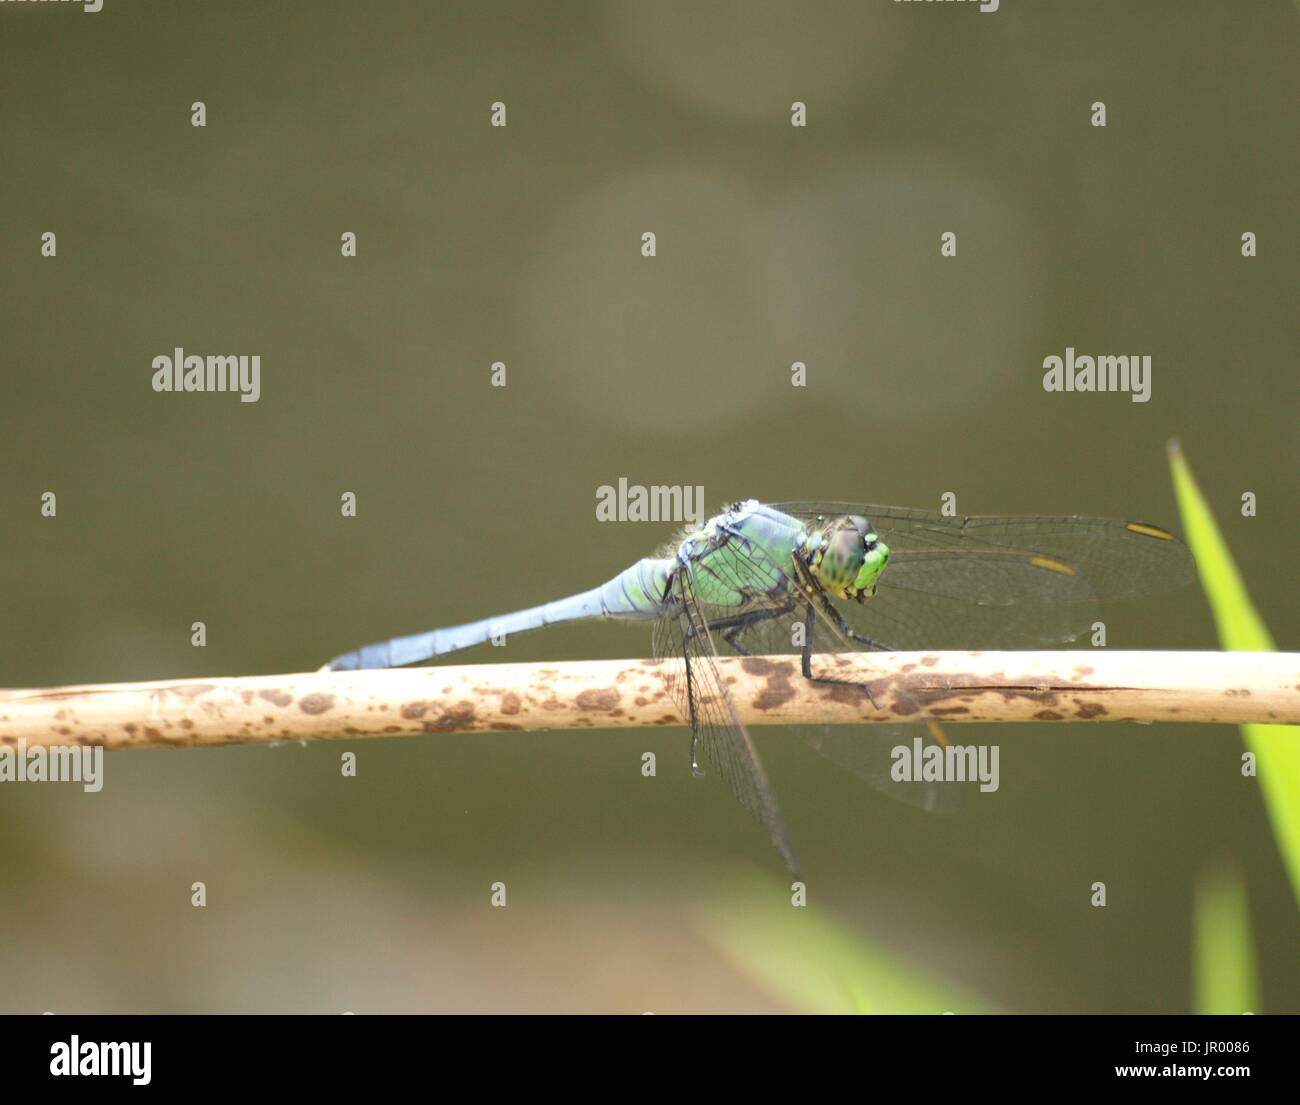 Vert et Bleu libellule posée sur des rameaux brun Banque D'Images